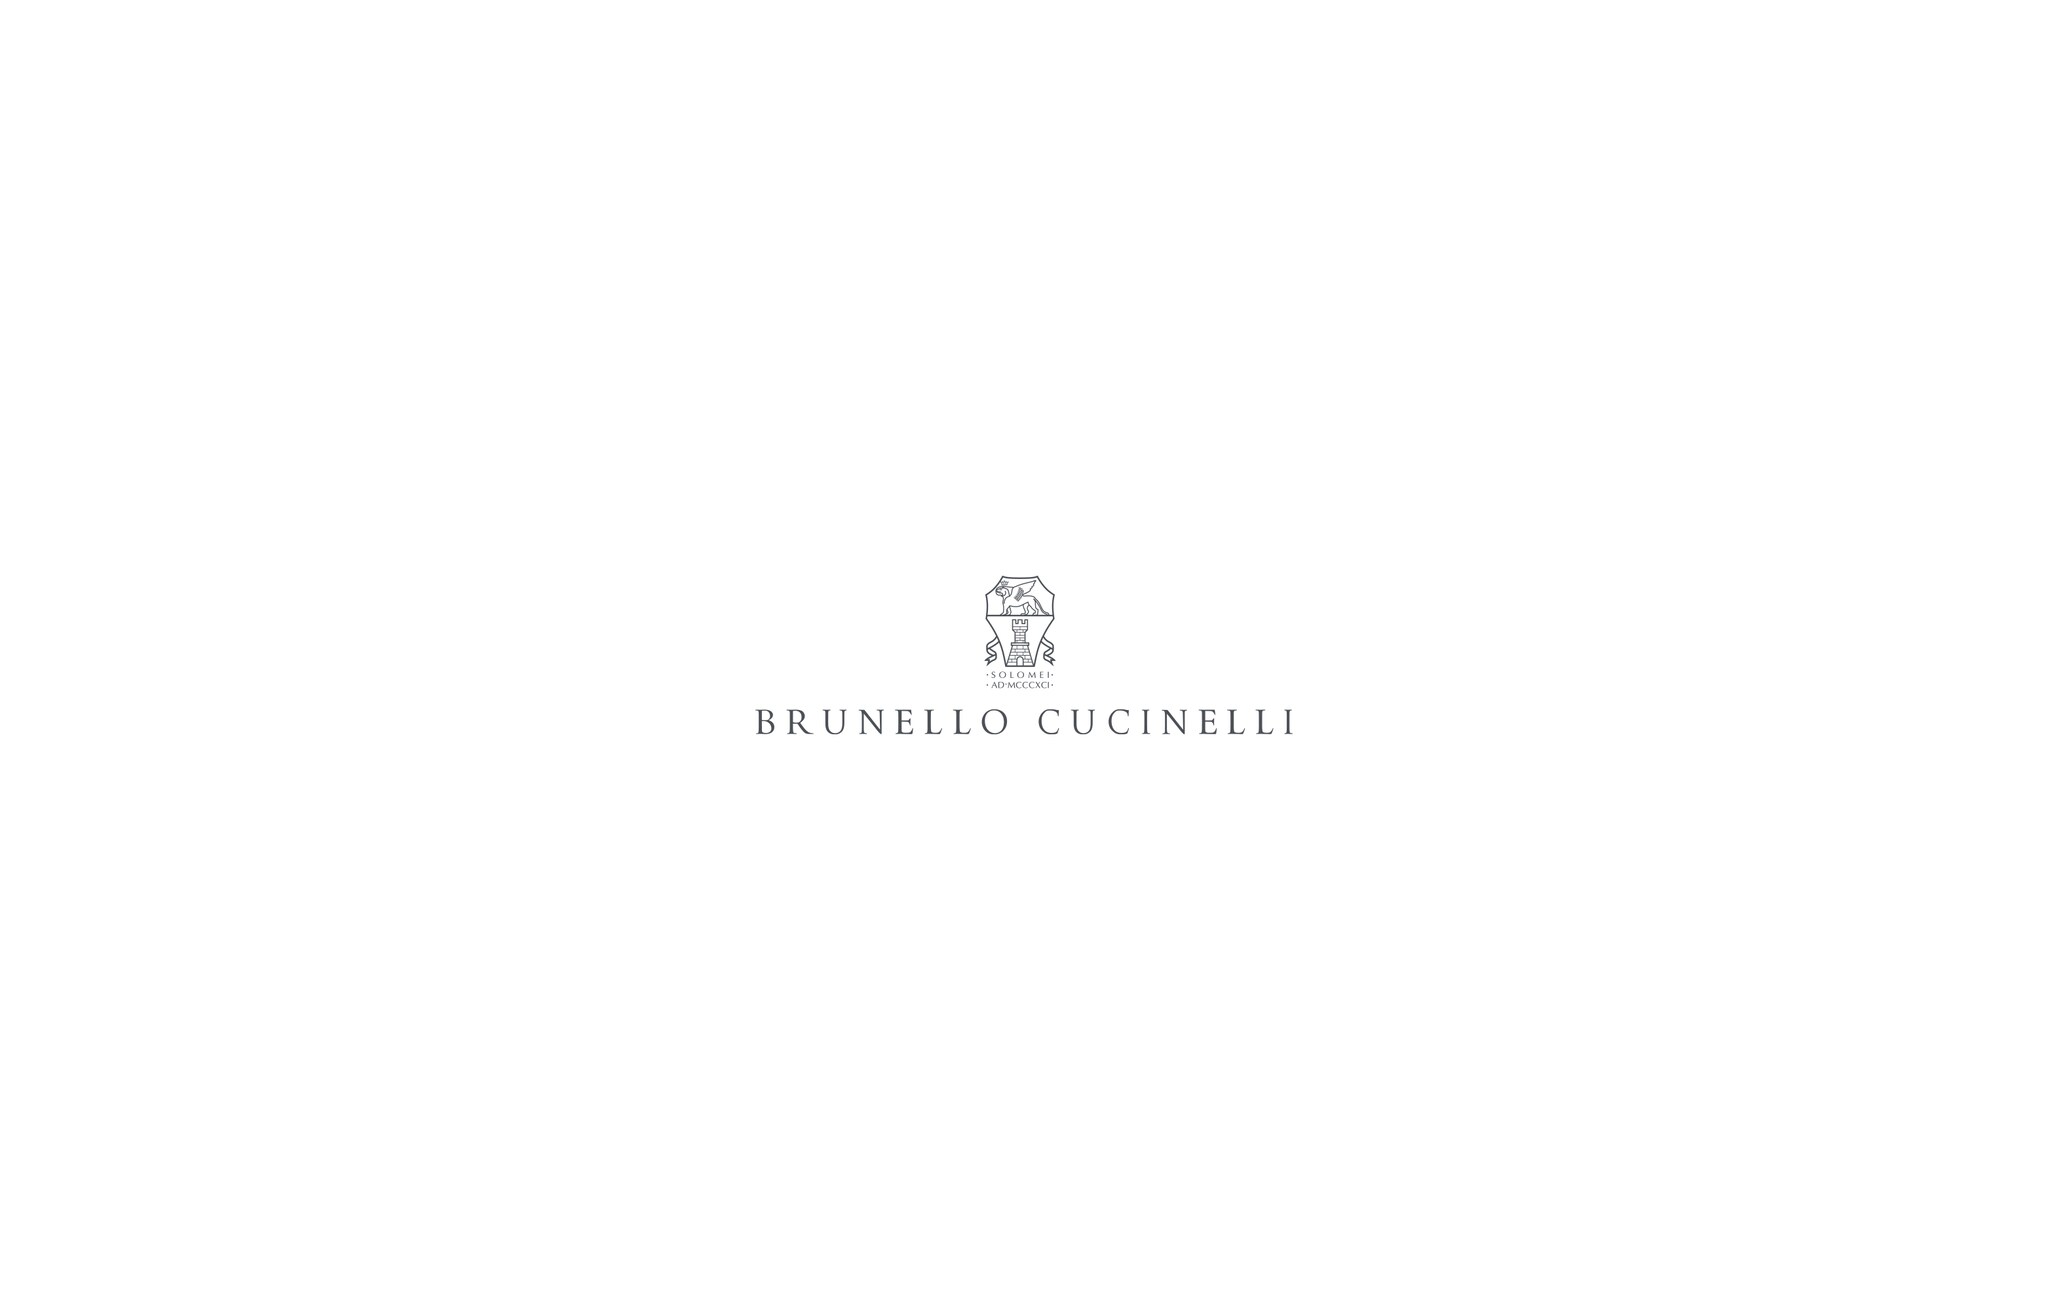  麻底布面便鞋 浅灰 女童 - Brunello Cucinelli 